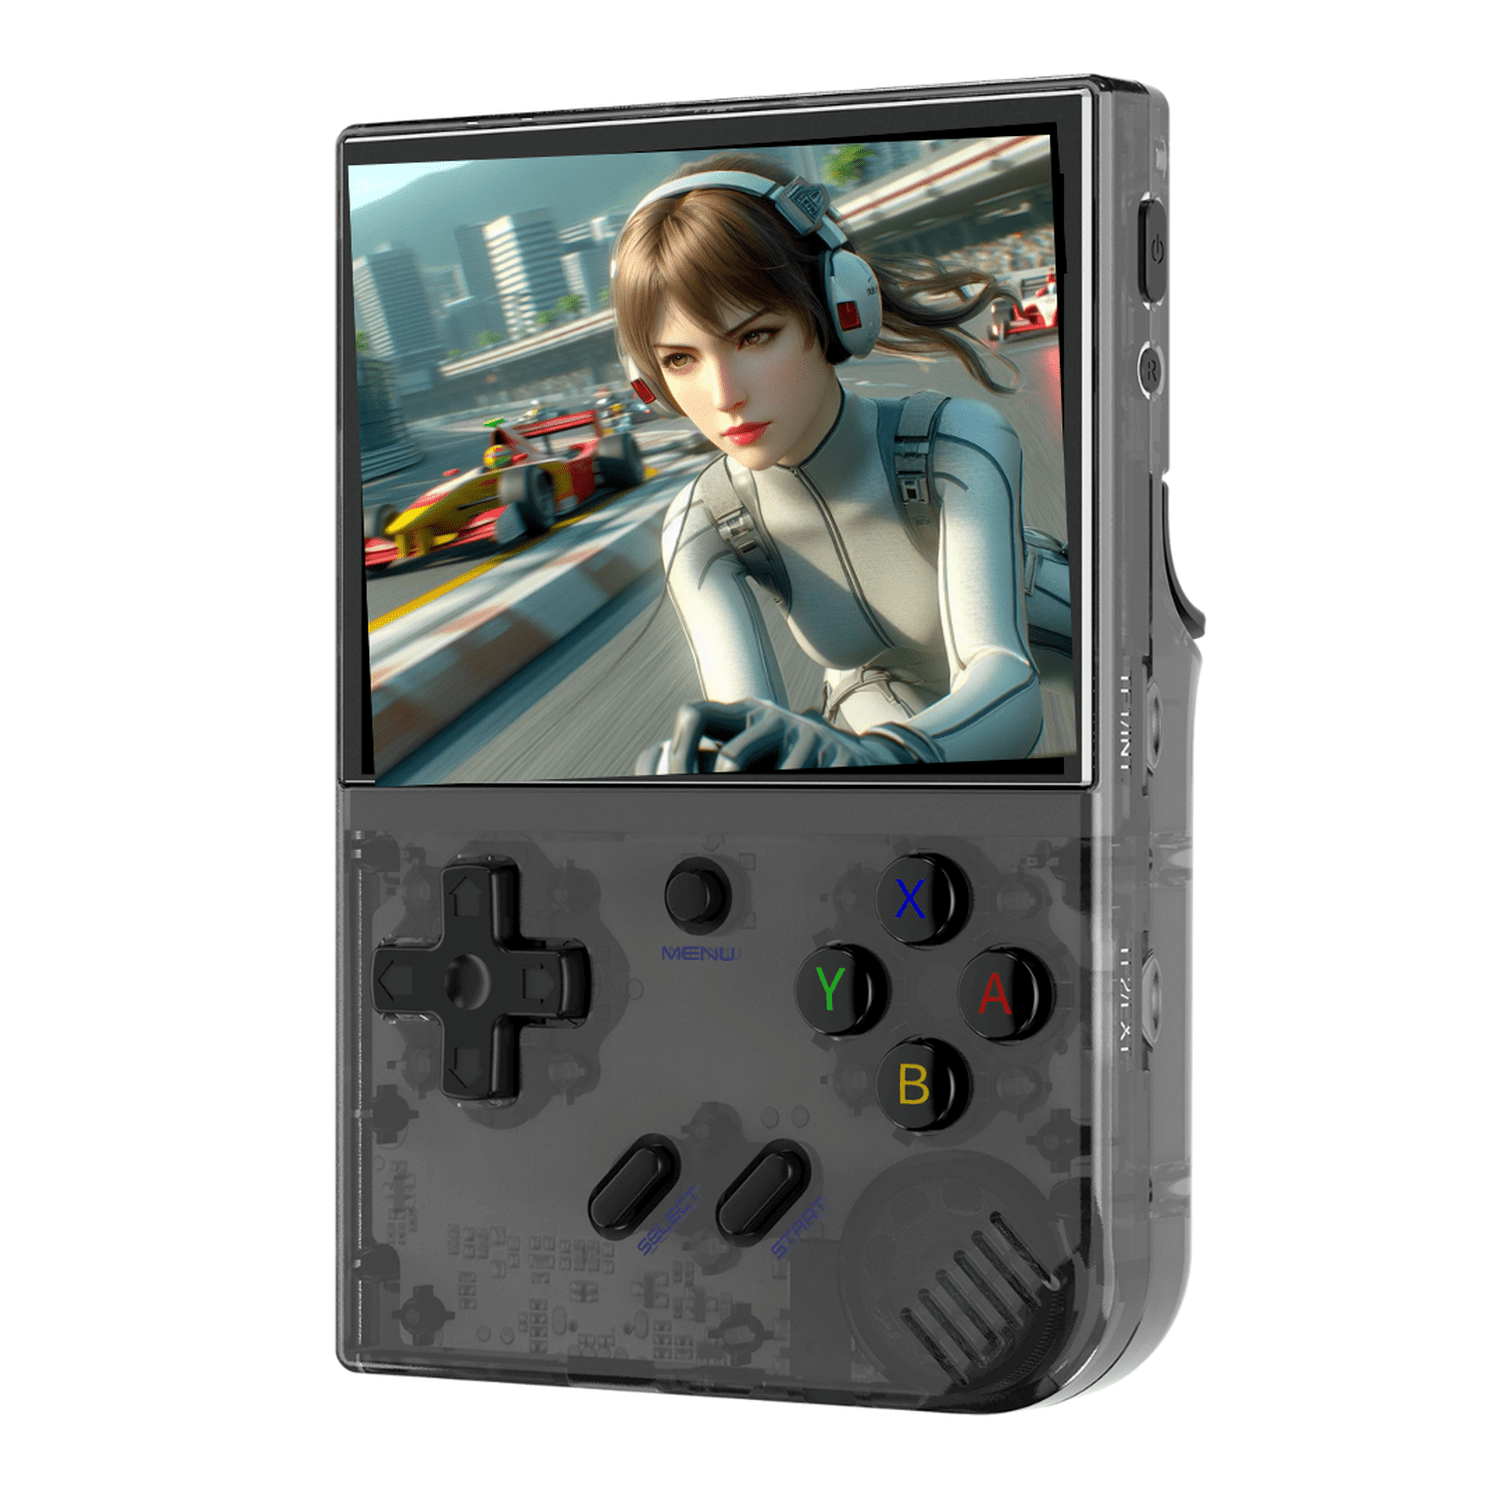 Console émulateur portable RG35XX Plus Anbernic